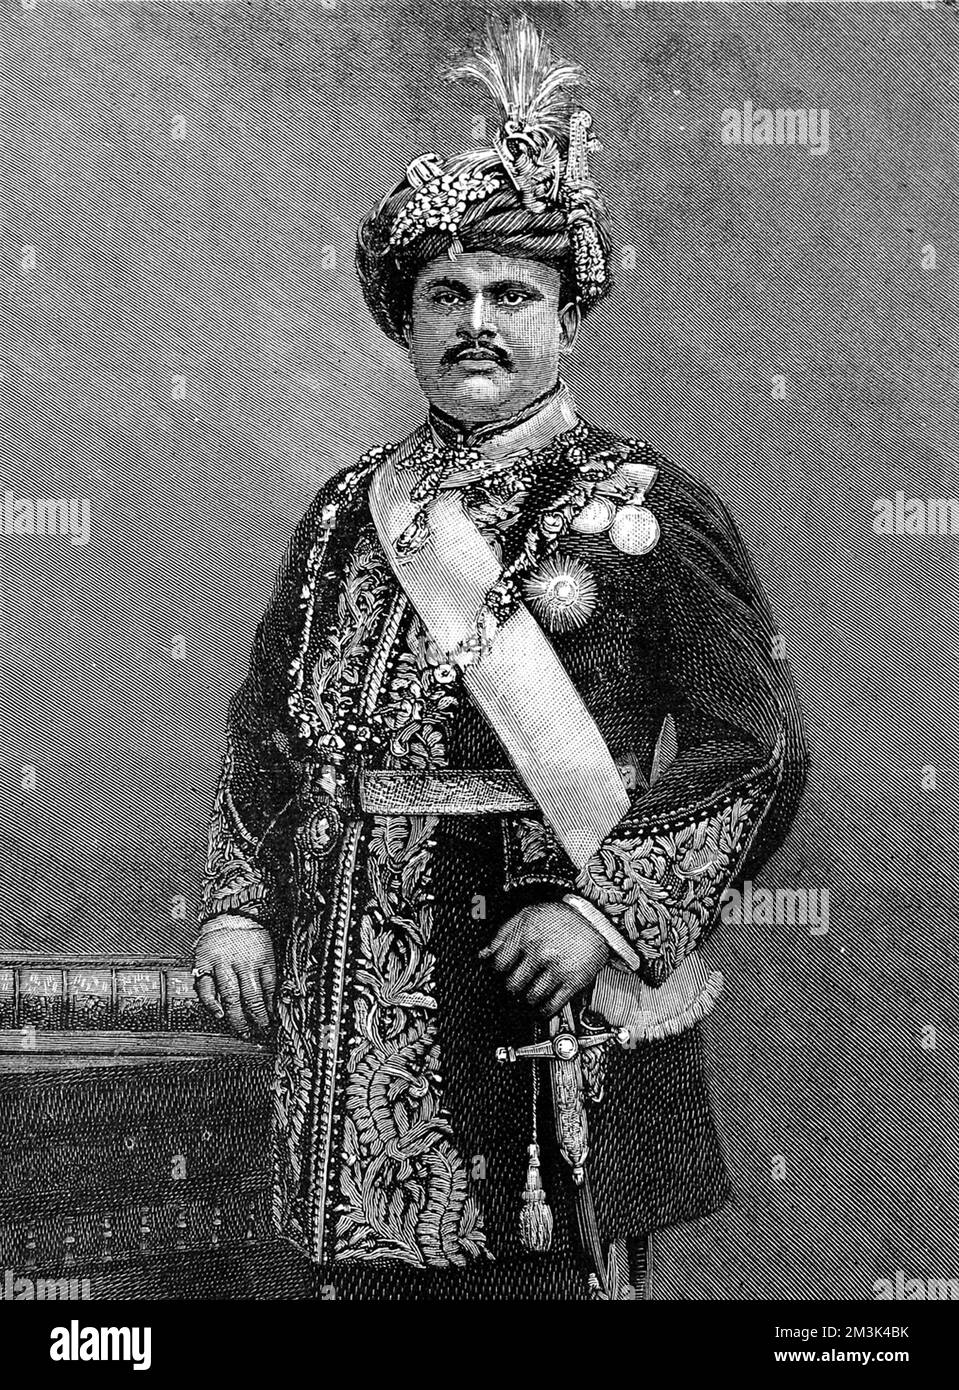 Seine Hoheit Maharadscha Takhtsingjie, G.C.S.I., der Maharadscha von Bhownugar. Der Maharadscha war in jenem Jahr ein Besucher Londons, um an der Eröffnung des Imperial Institute teilzunehmen. 13. Mai 1893 Stockfoto